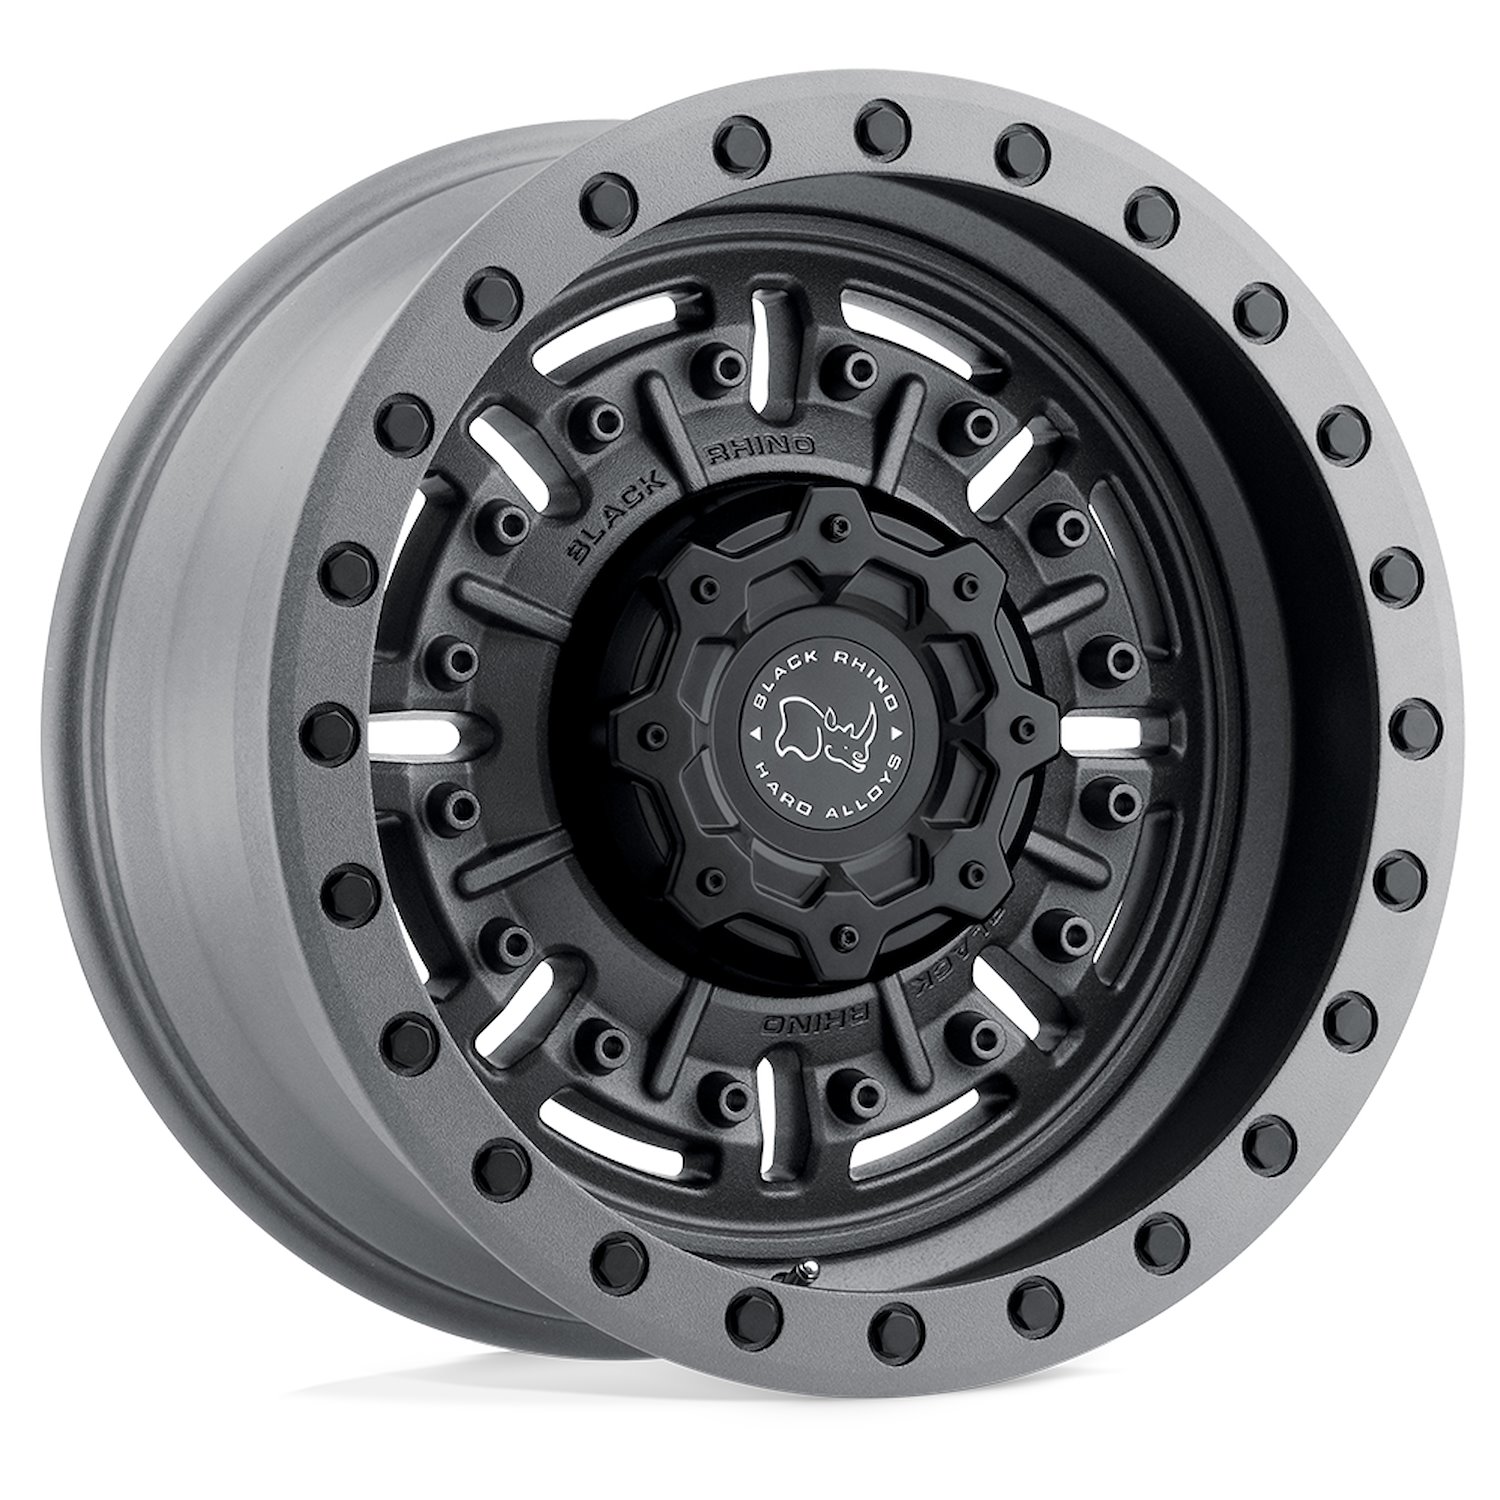 1795ABR-85127G71 ABRAMS Wheel [Size: 17" x 9.50"] Textured Matte Gunmetal